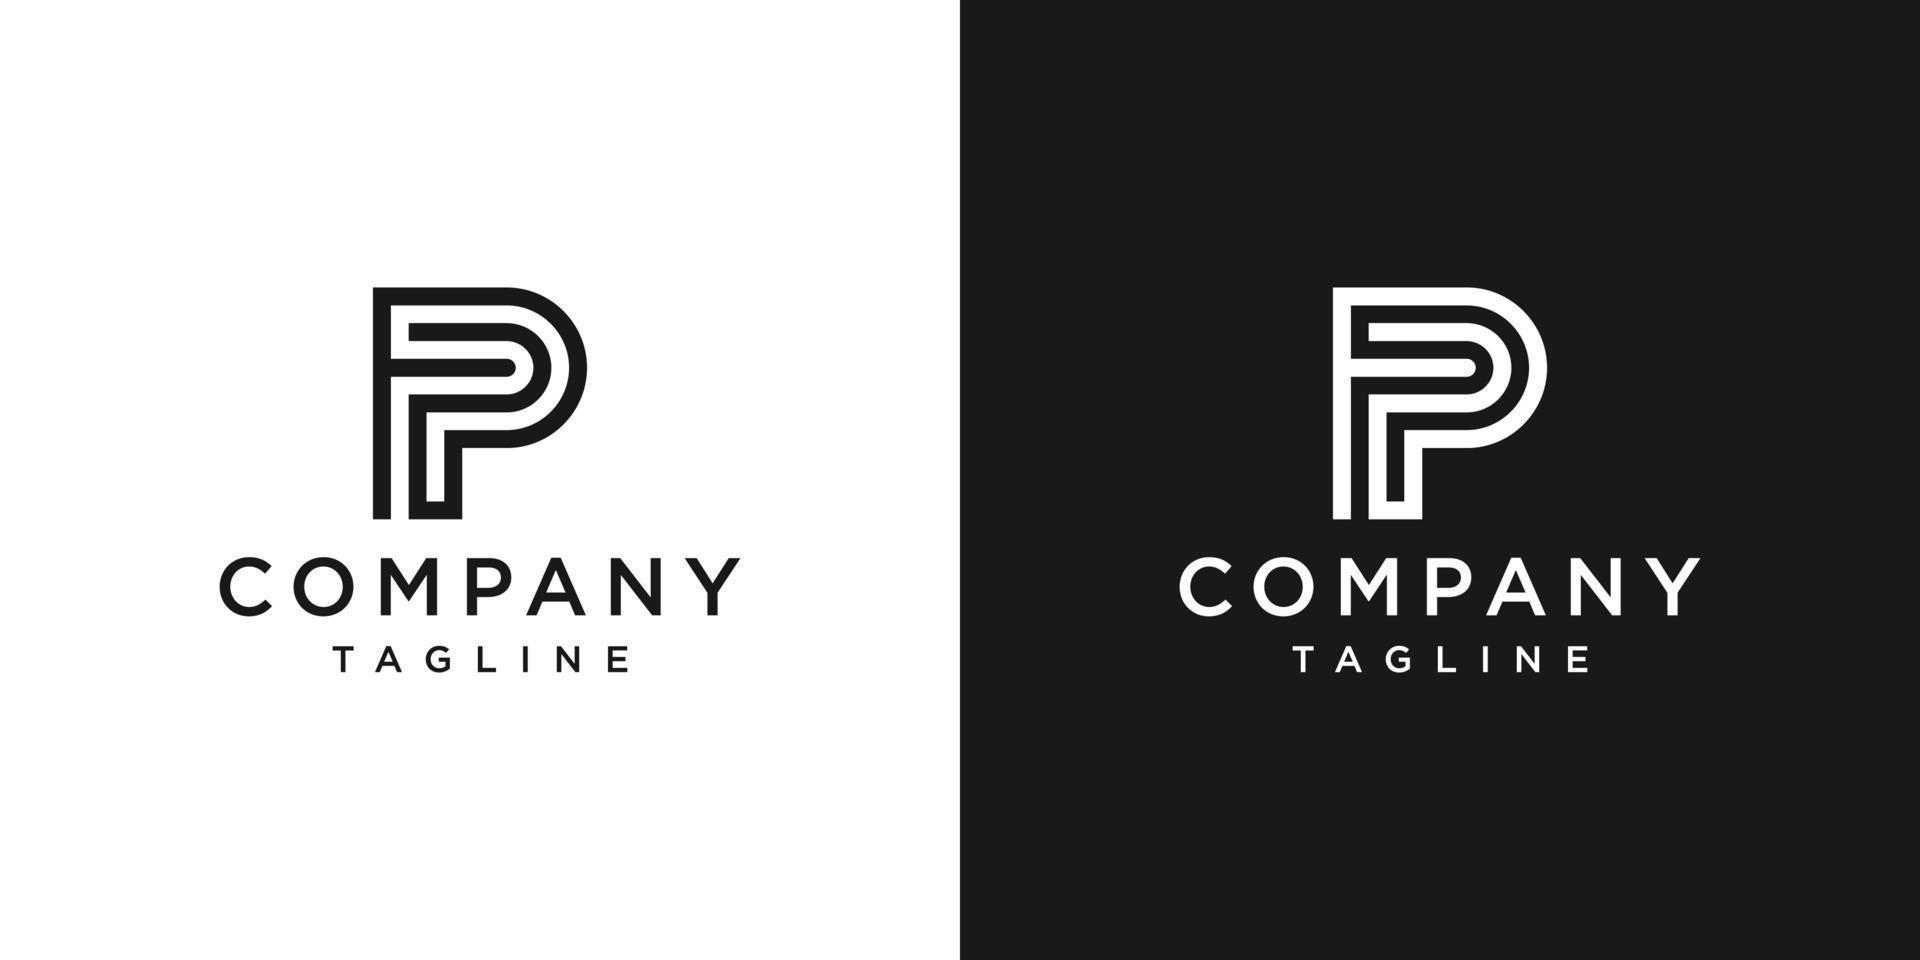 creatieve brief fp monogram logo ontwerp pictogrammalplaatje witte en zwarte achtergrond vector